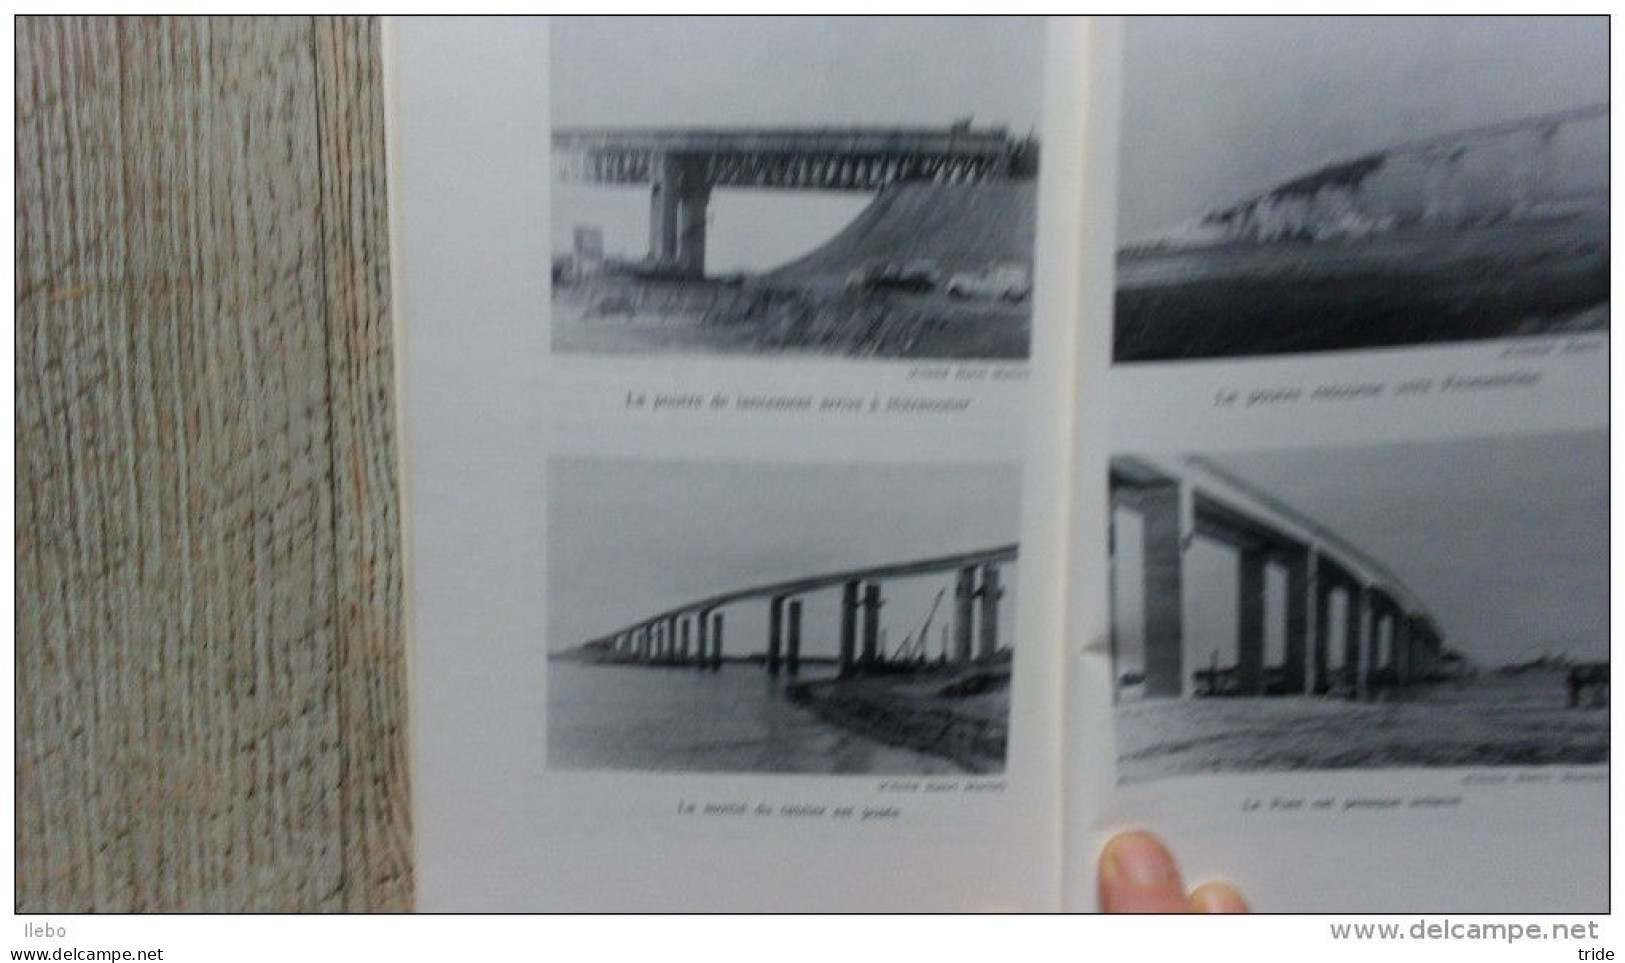 L'histoire Du Gois Le Pont De Noirmoutier Par Henri Martin 1971 Illustré Rare - Toeristische Brochures